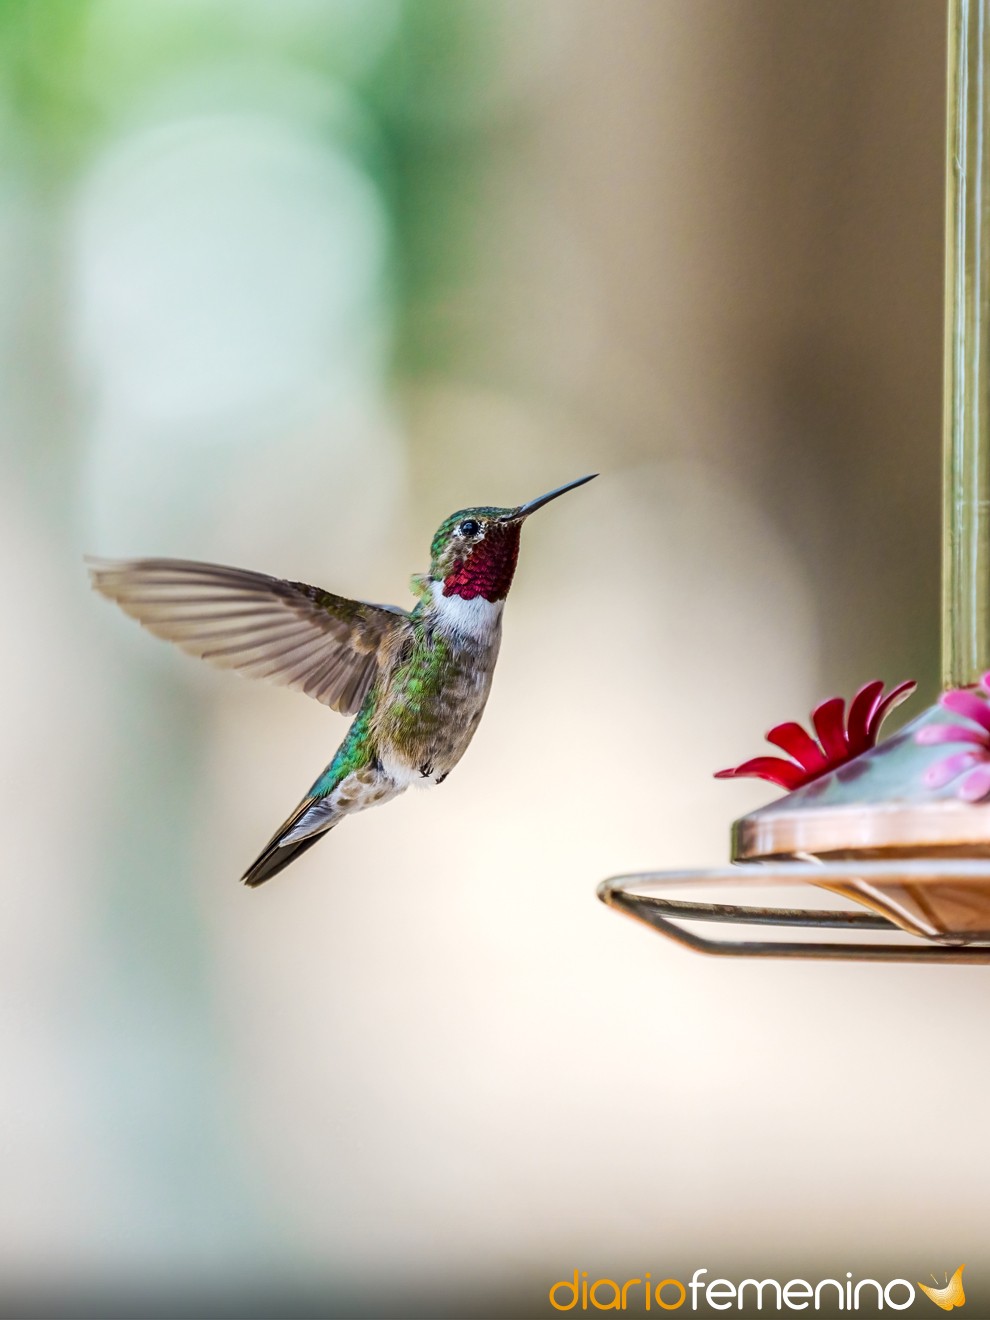 Soñar con un colibrí: descubre tu potencial